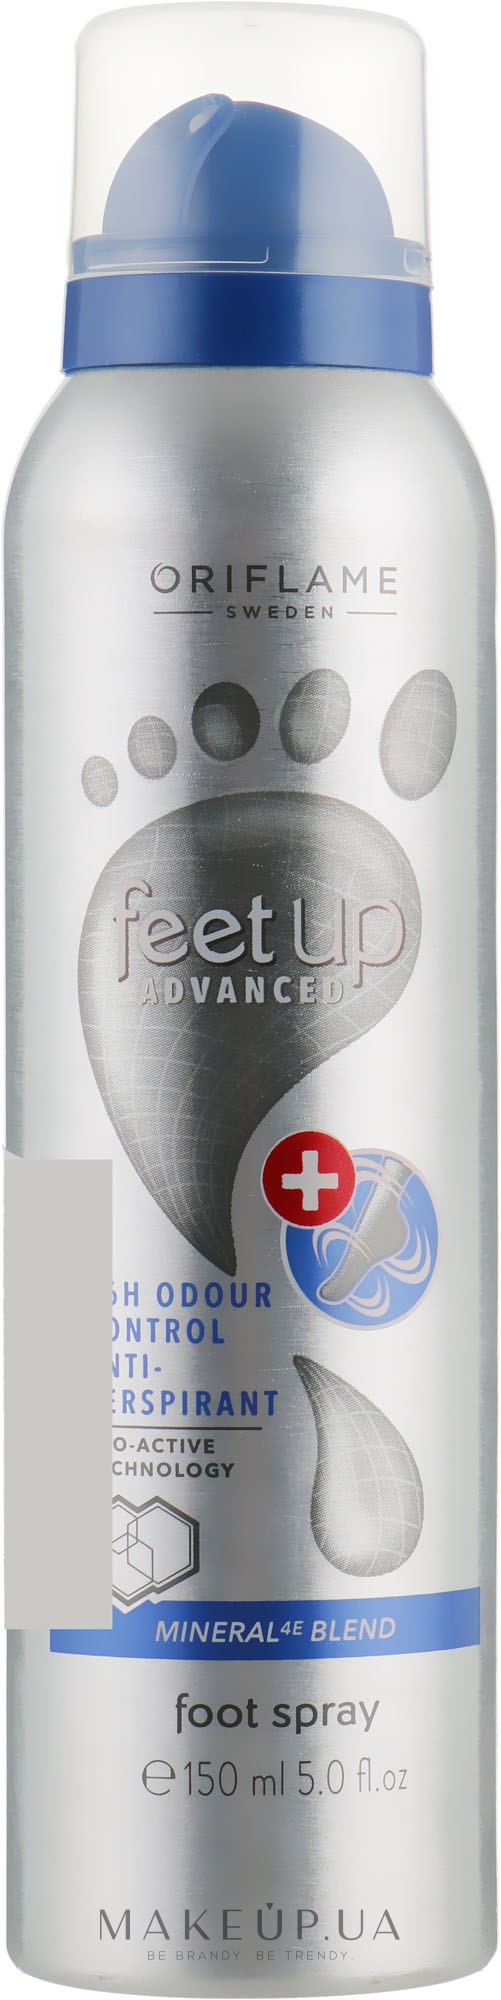 Дезодорант-антиперспірант для ніг 36-годинної дії - Oriflame Feet Up Advanced — фото 150ml